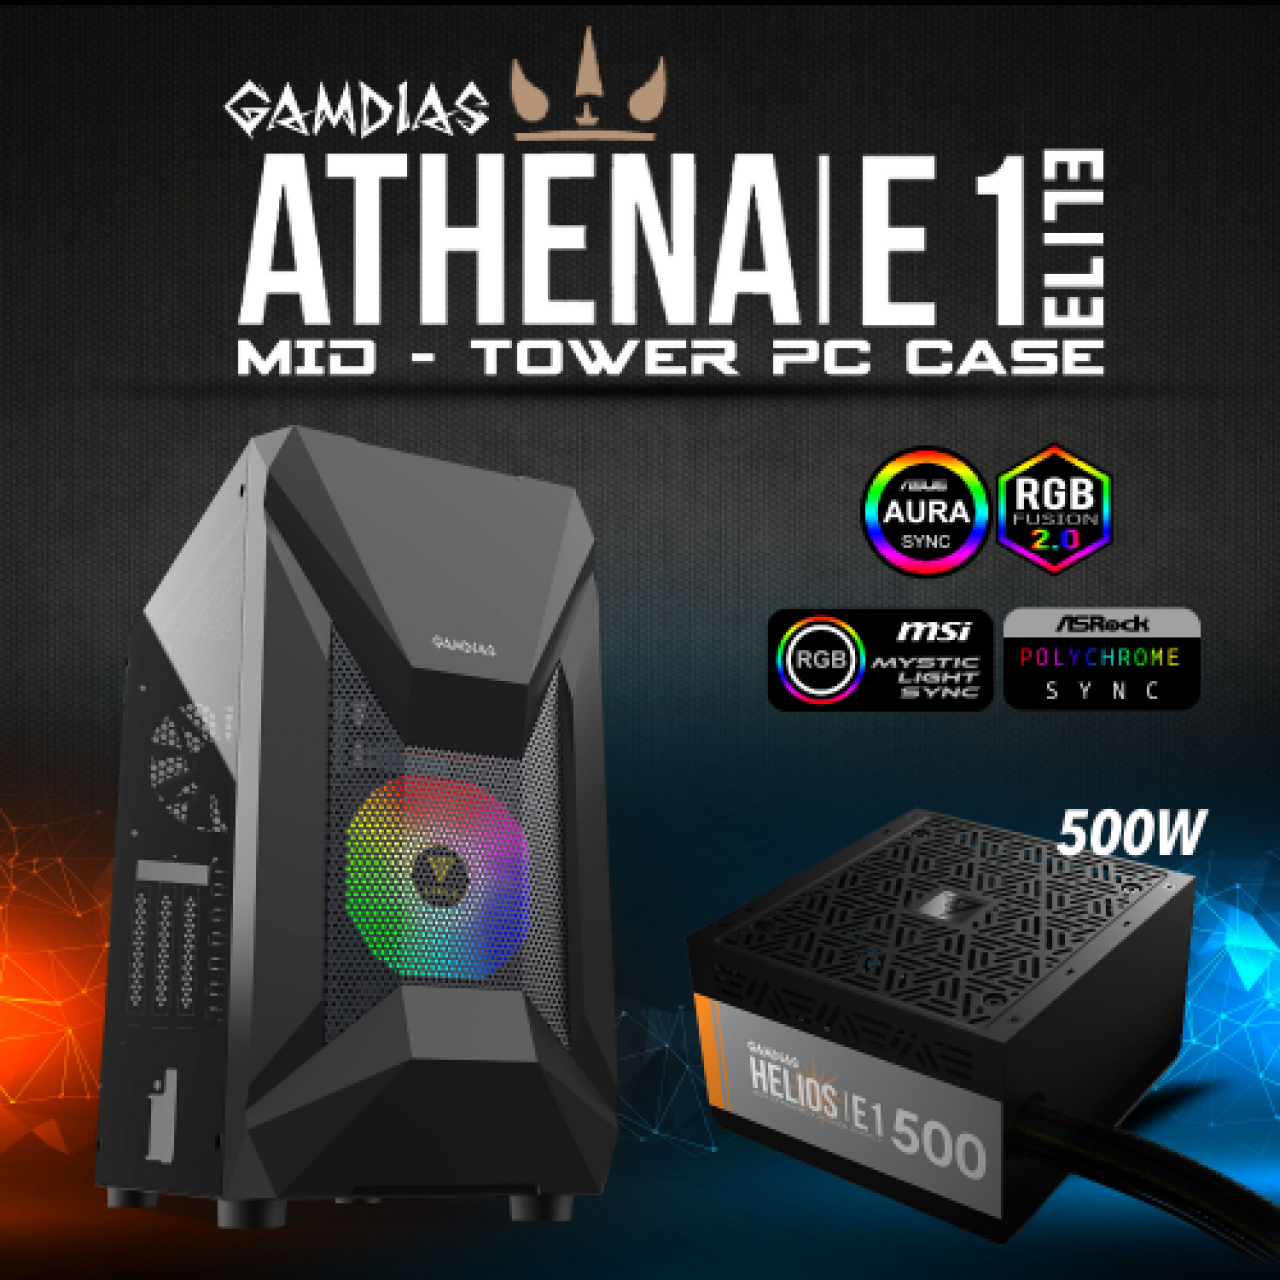 GAMDIAS 500W ATHENA E1 ELITE RGB FANLI GAMING MID-TOWER PC KASASI